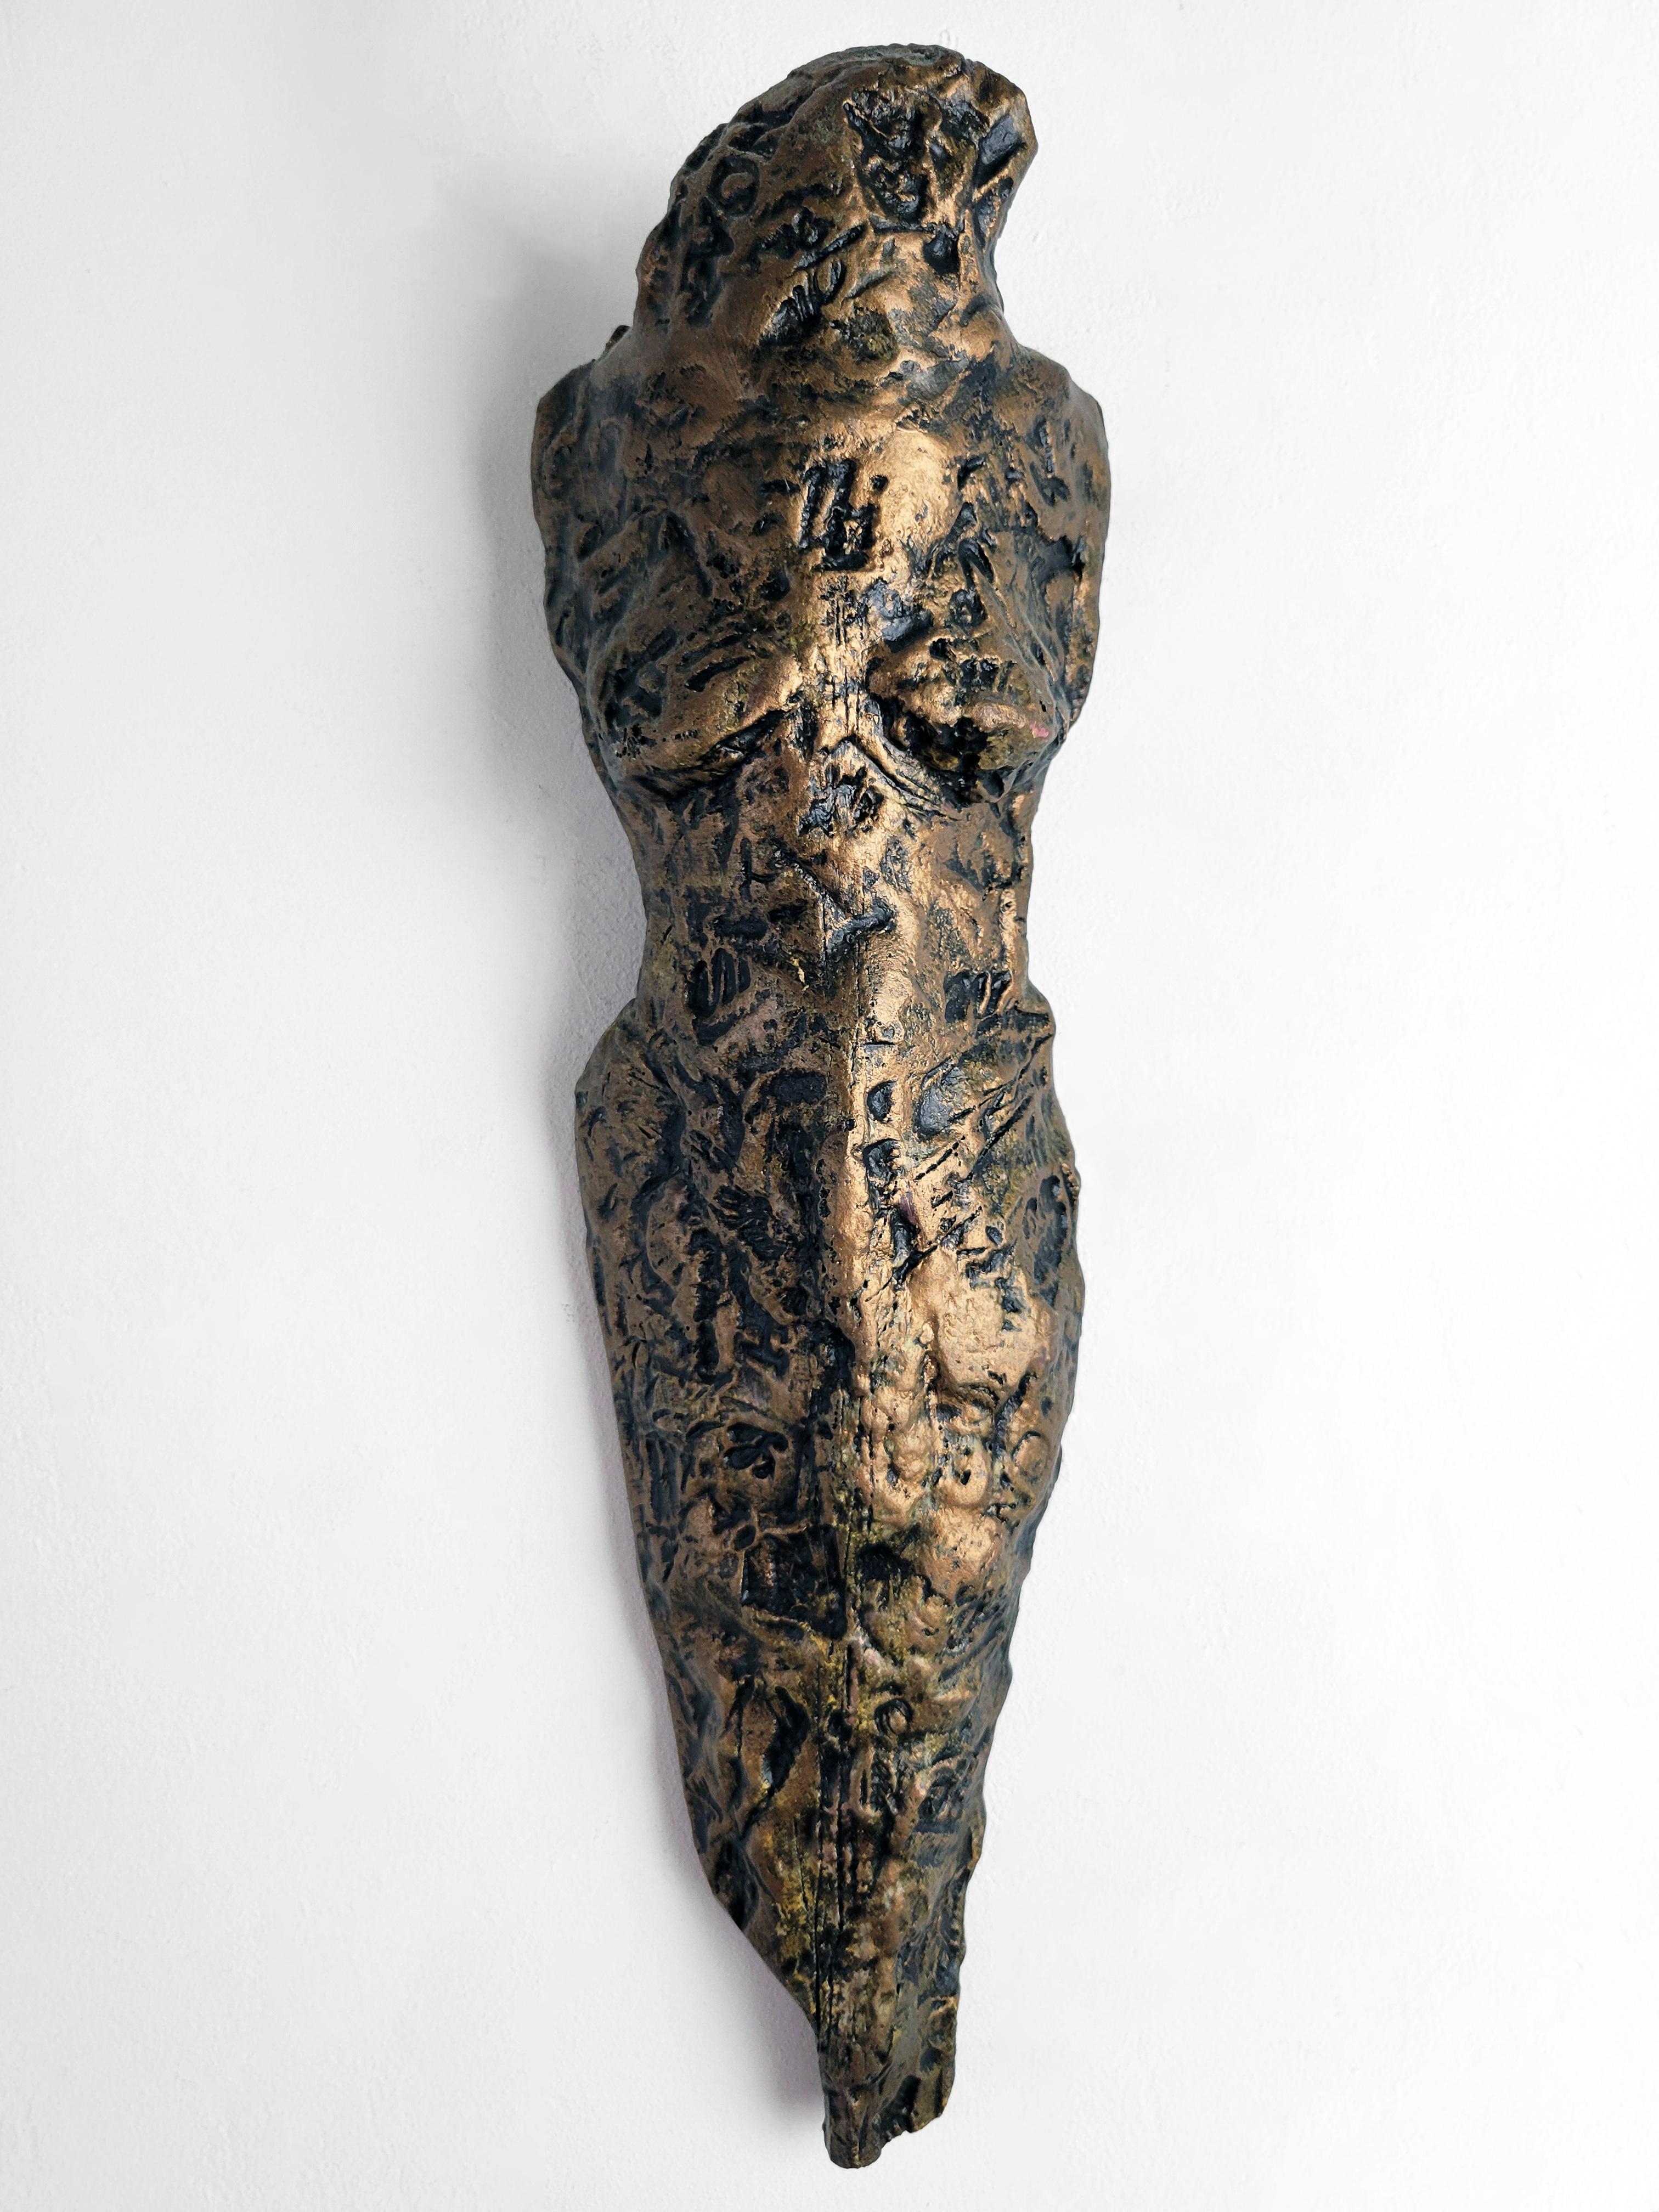 Diese Skulptur aus der Serie "Knights of Protection" von Linda Stein fungiert sowohl als Verteidiger im Kampf als auch als Symbol des Pazifismus. Sie ist aus Keramik mit Metallfarben hergestellt.

Steins Werke befinden sich in mehr als 25 ständigen